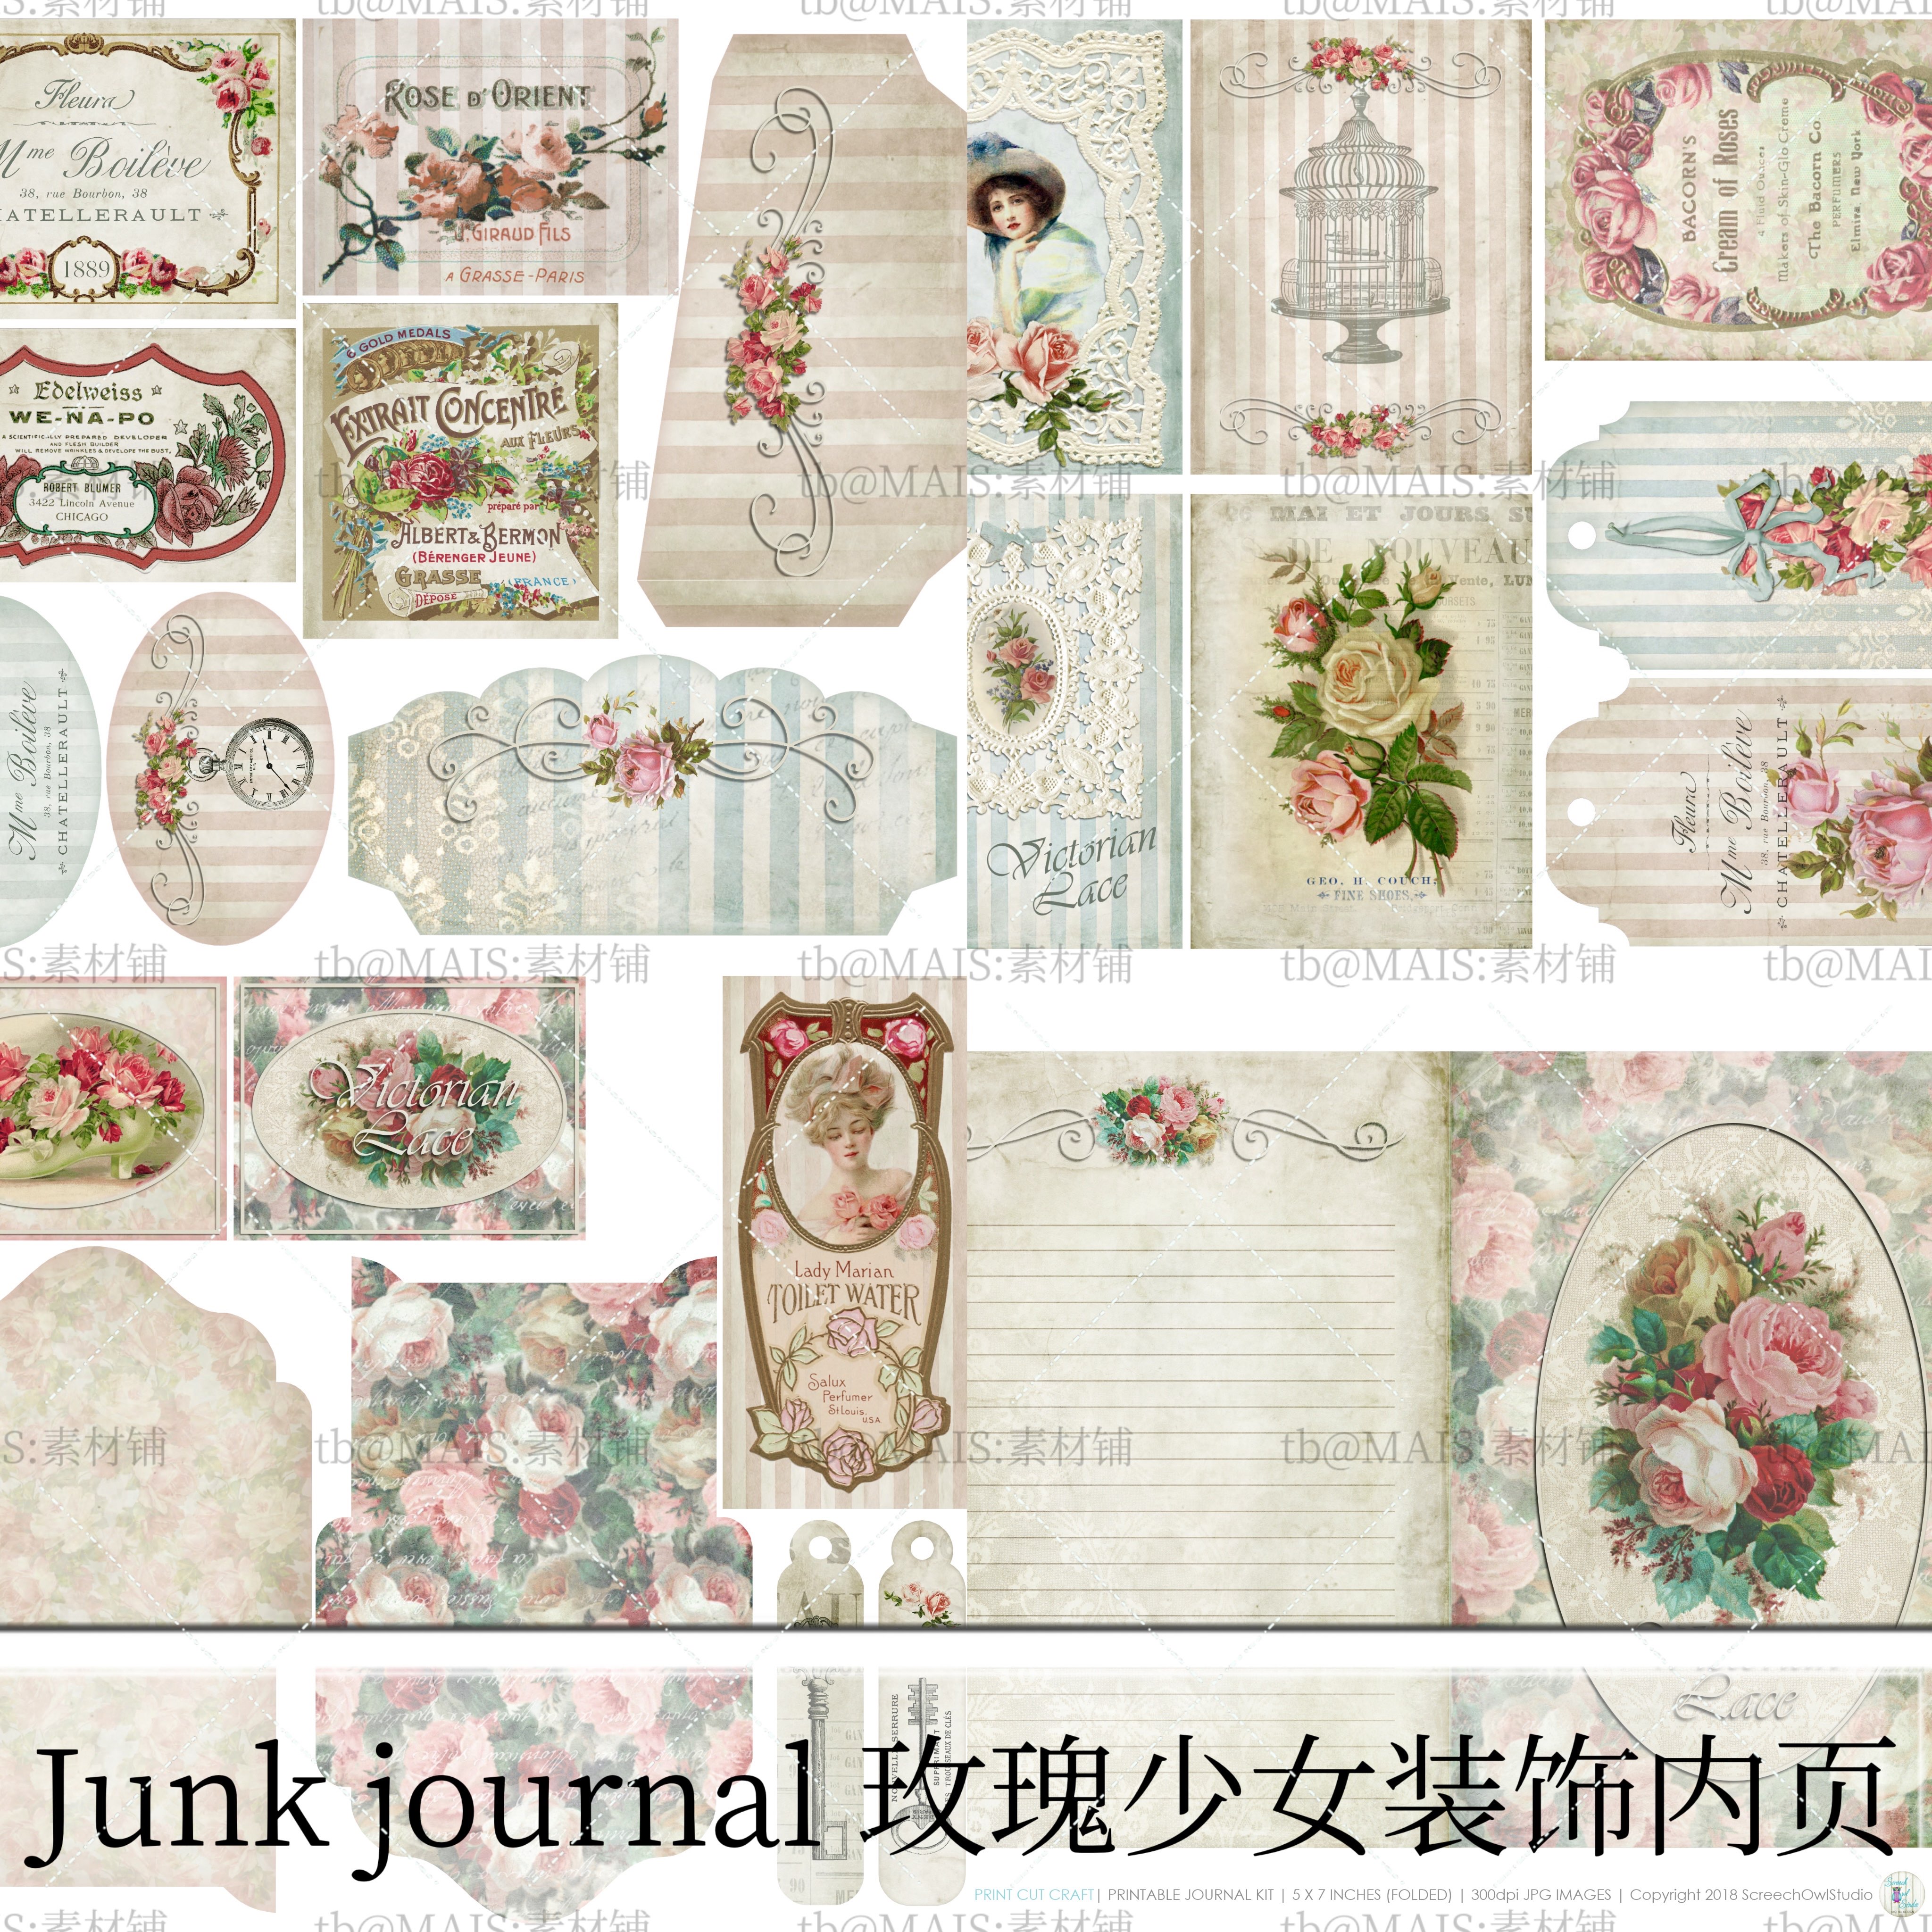 M24玫瑰少女复古内页装饰junk journal 手帐拼贴背景电子素材A4图